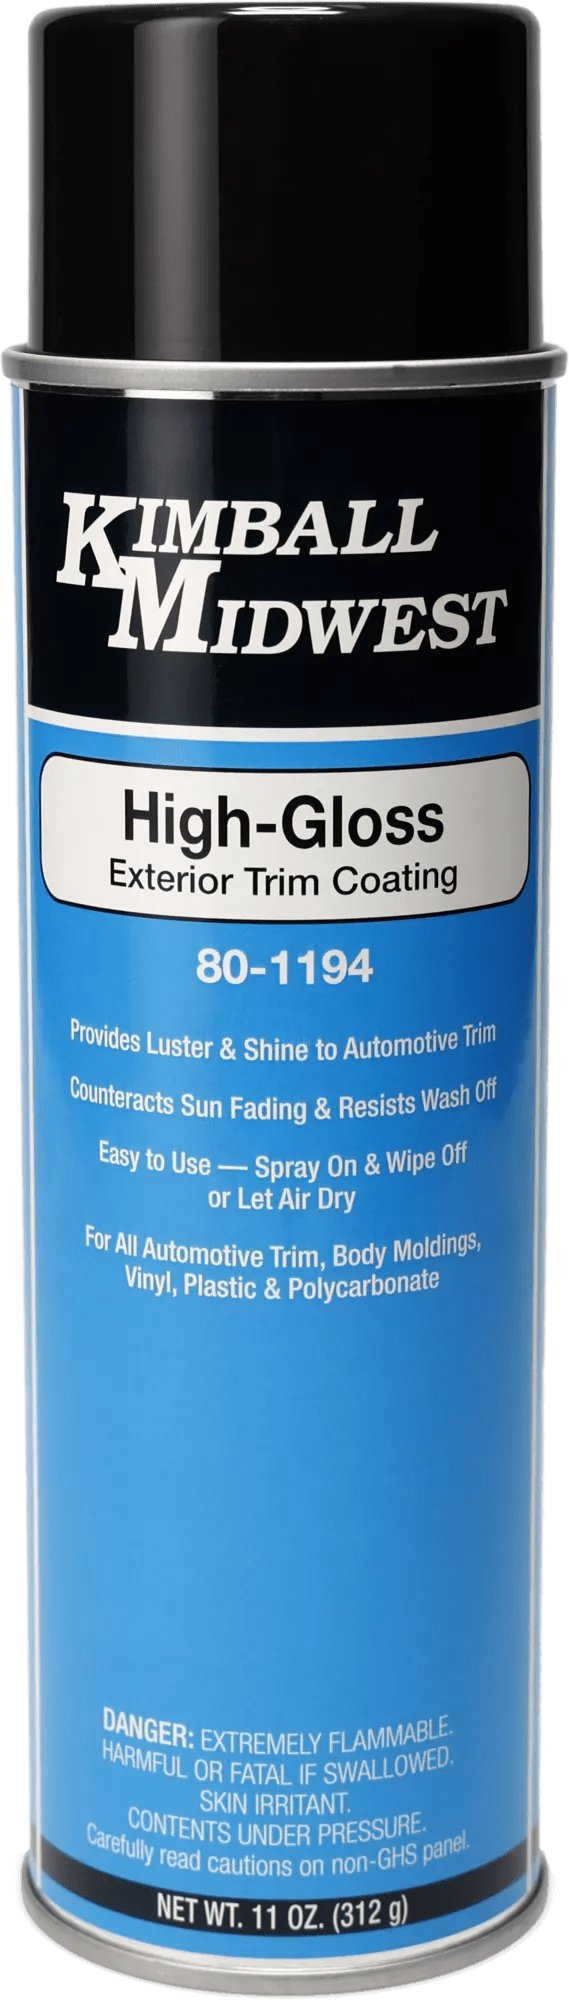 High-Gloss Exterior Trim Coating